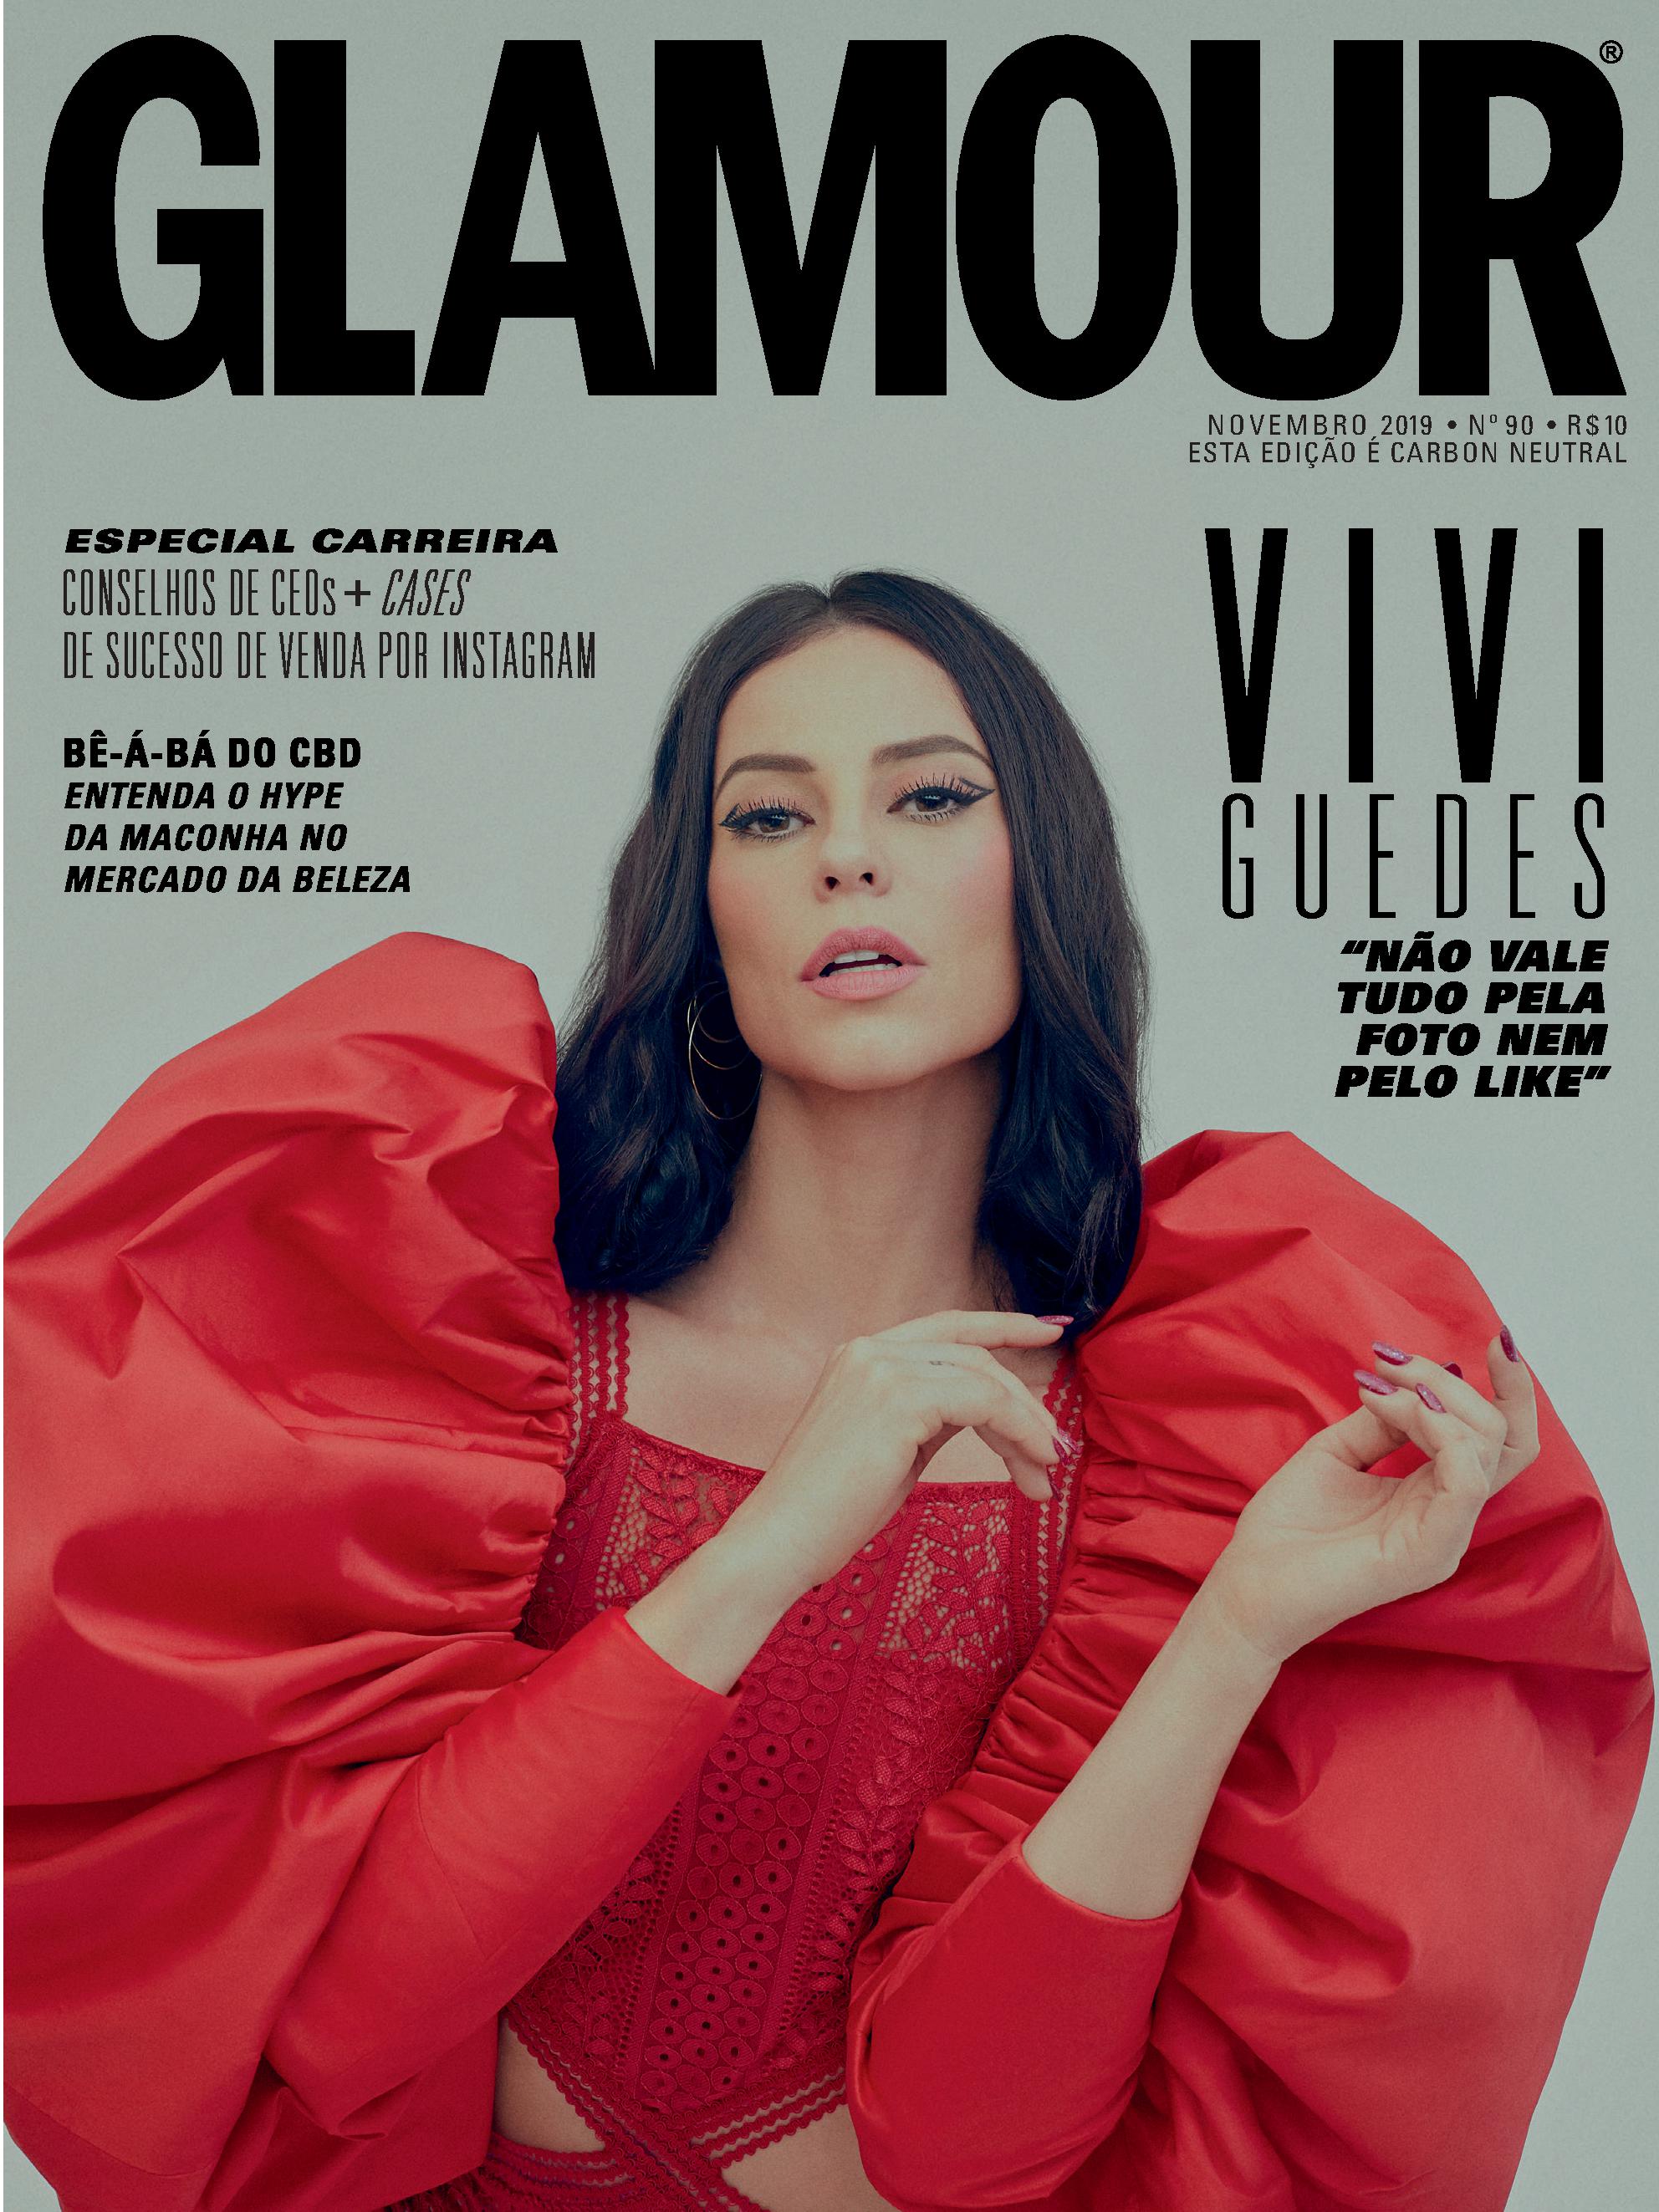 Glamour Brasil on X: Foi aqui que pediram uma capa com a